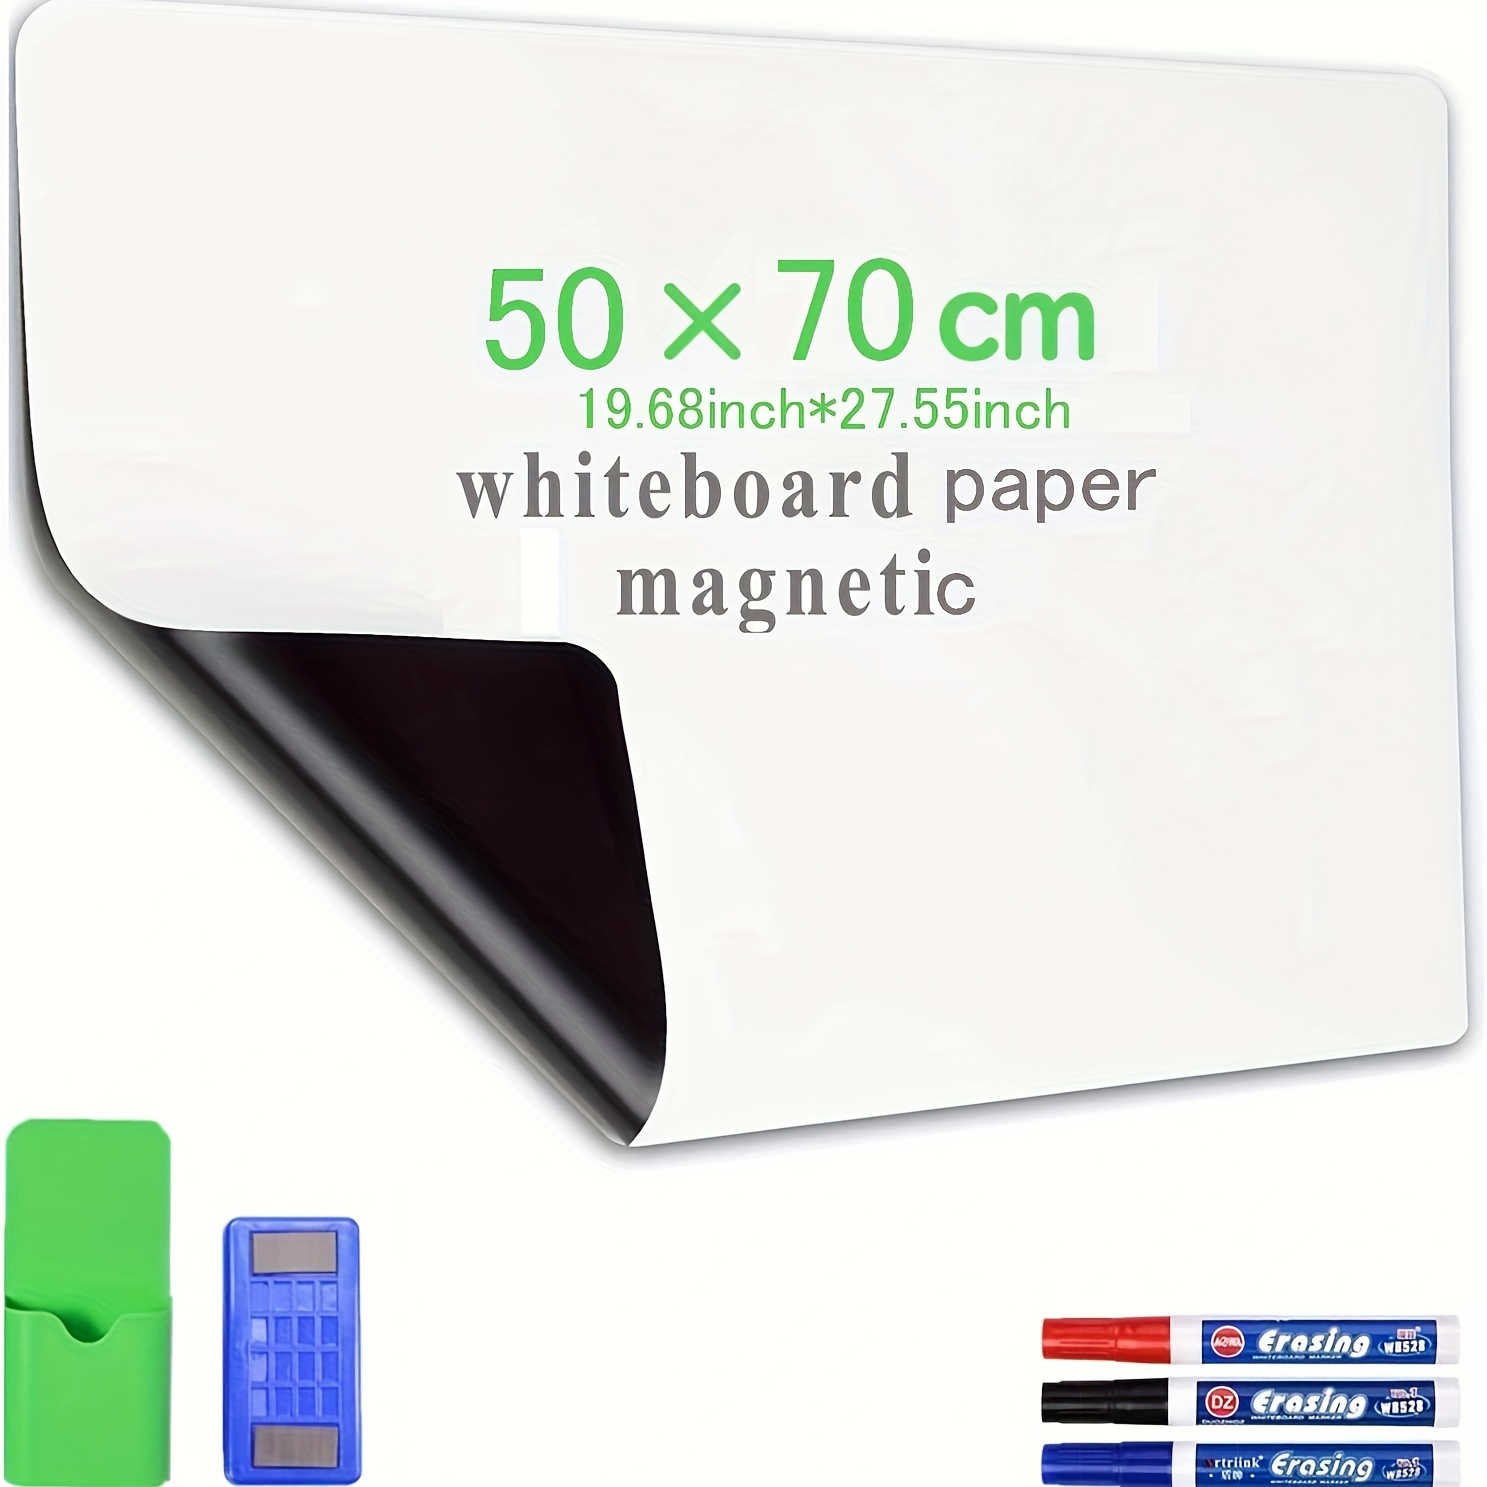 Adhesivo de pizarra blanca de borrado en seco, papel de contacto, rollo de  papel tapiz de pizarra blanca, 6 x 4 pies, película adhesiva adhesiva